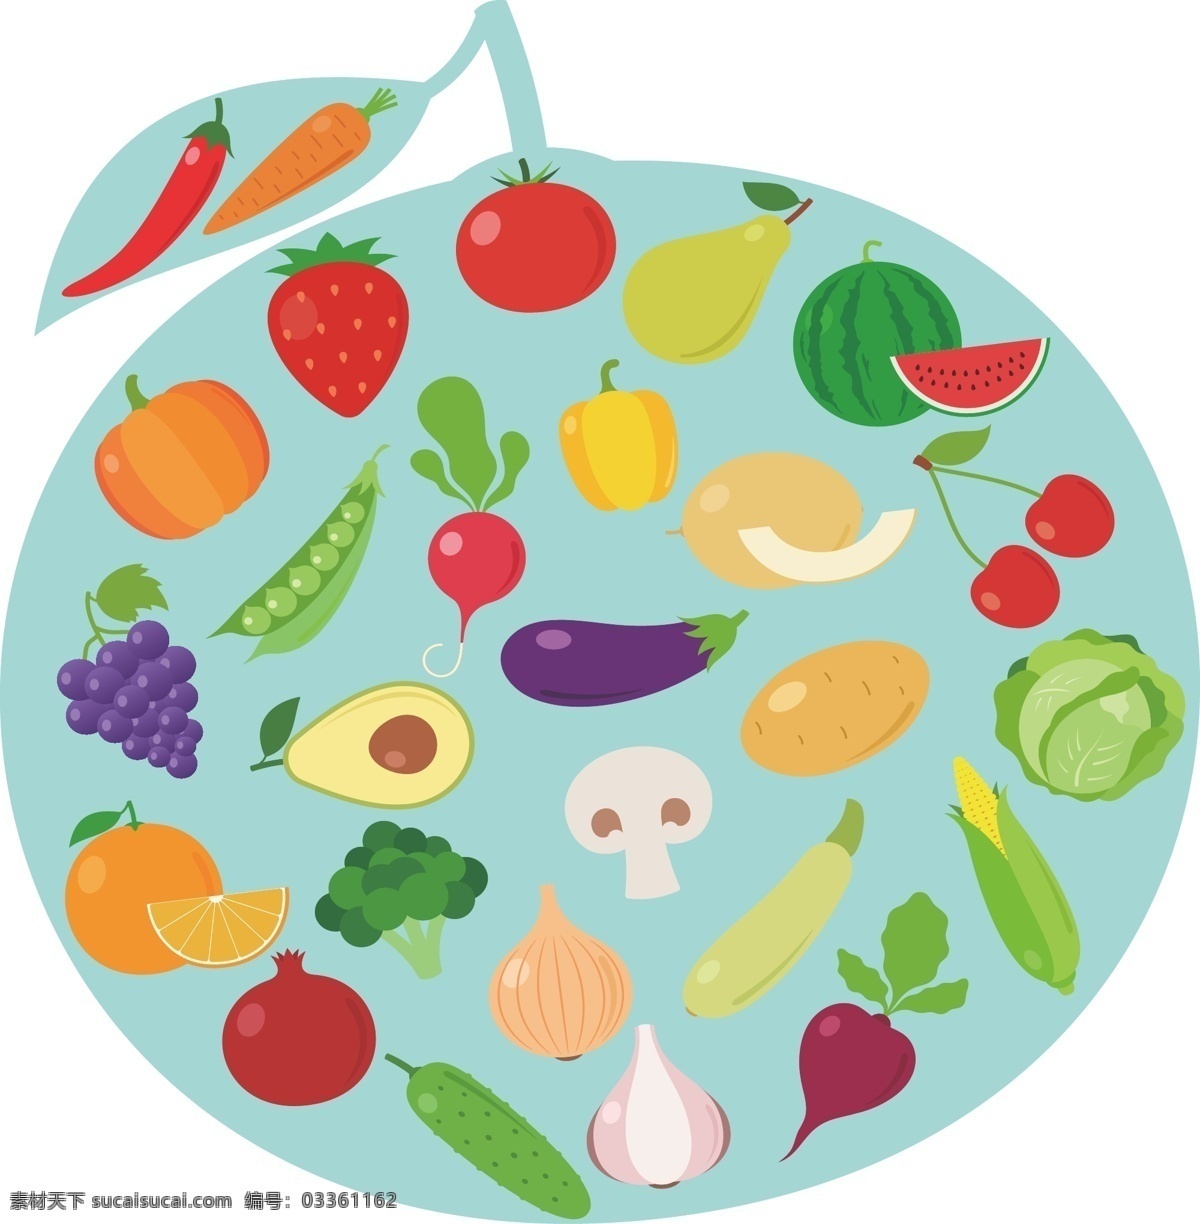 水果蔬菜素材 水果素材 蔬菜素材 绿色水果 绿色蔬菜 水果蔬菜 标志图标 公共标识标志